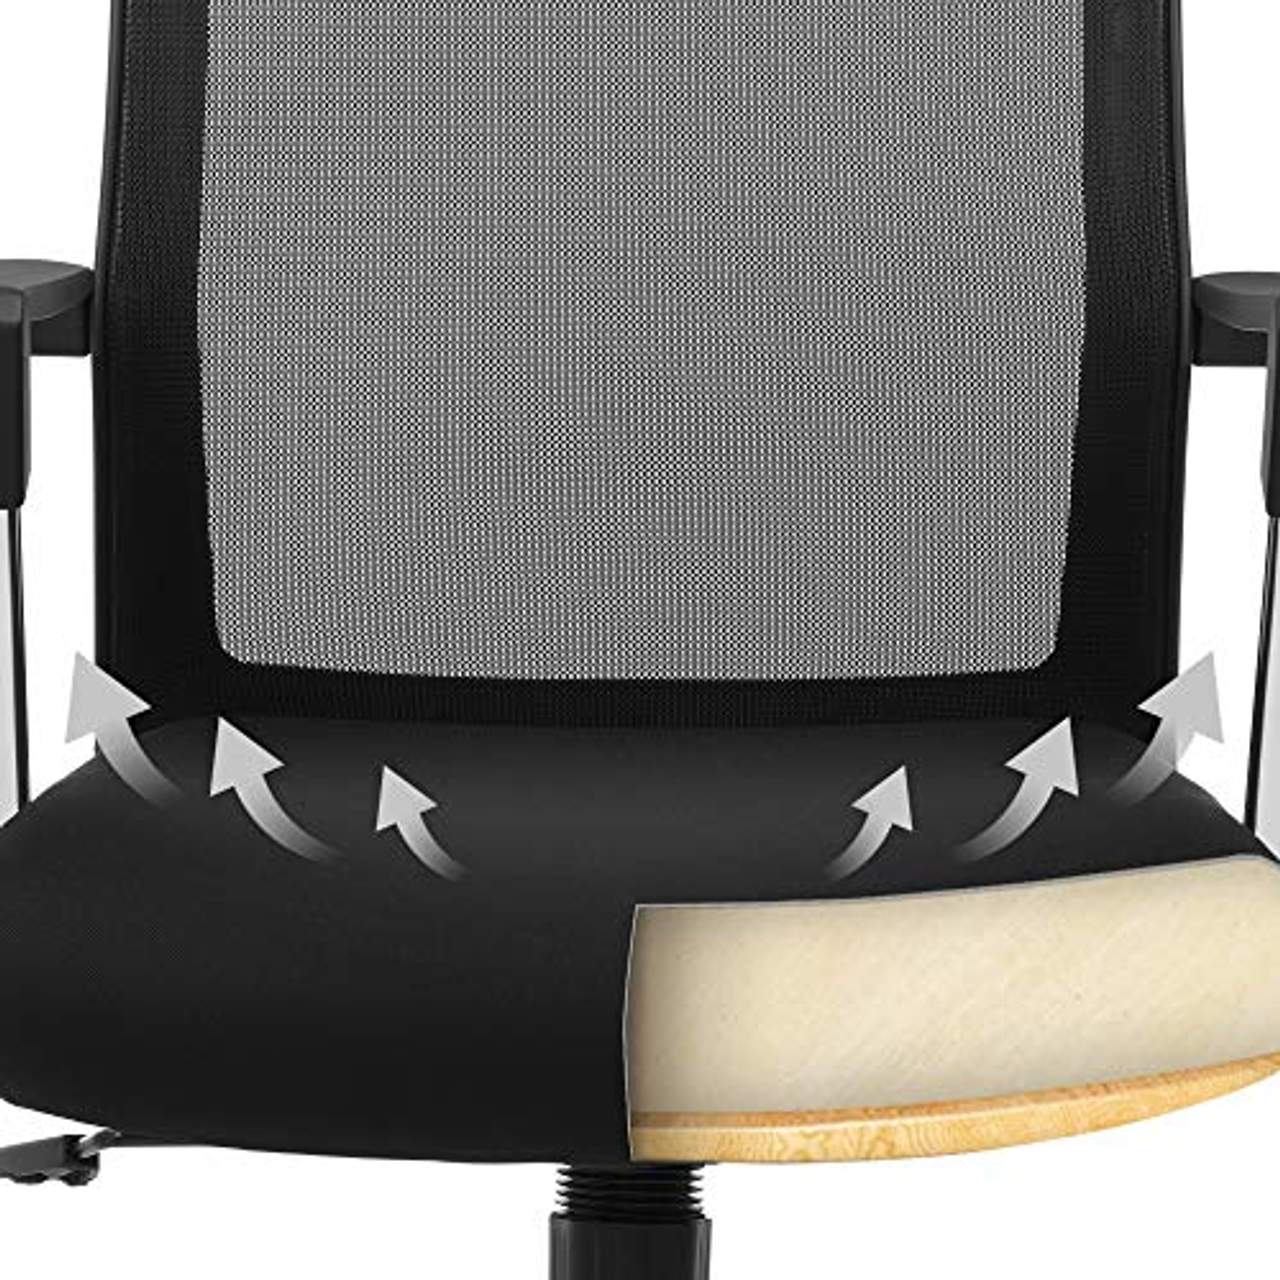 SONGMICS Bürostuhl mit Netzrückenlehne Chefsessel Bürodrehstuhl Drehstuhl höhenverstellbar Wippfunktion